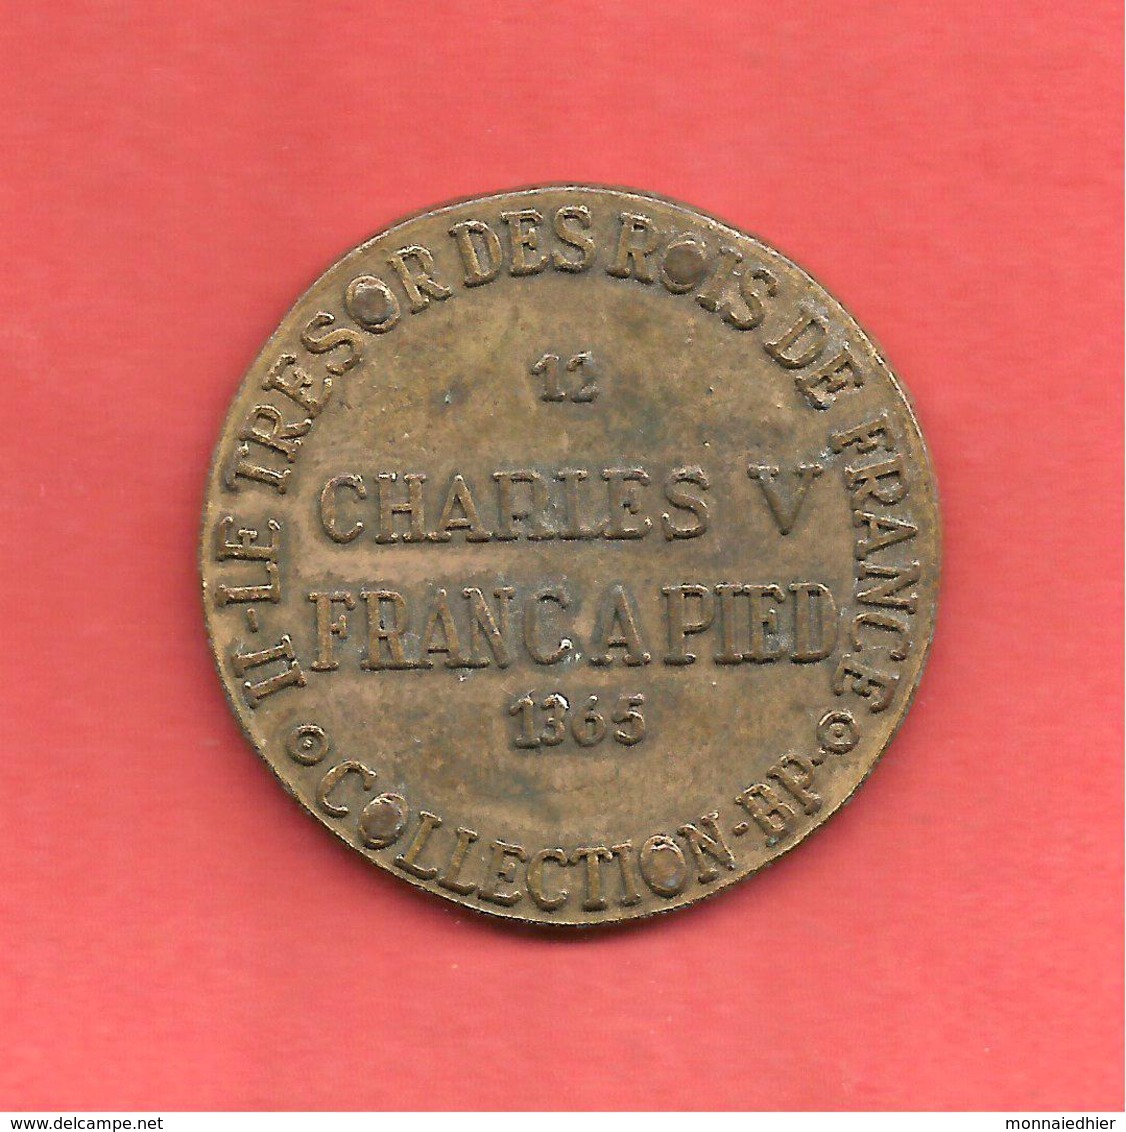 JETON COLLECTION BP , FRANC A PIED CHARLES V , 1365 , LE TRESOR DES ROIS DE FRANCE N° 12 - Professionnels / De Société